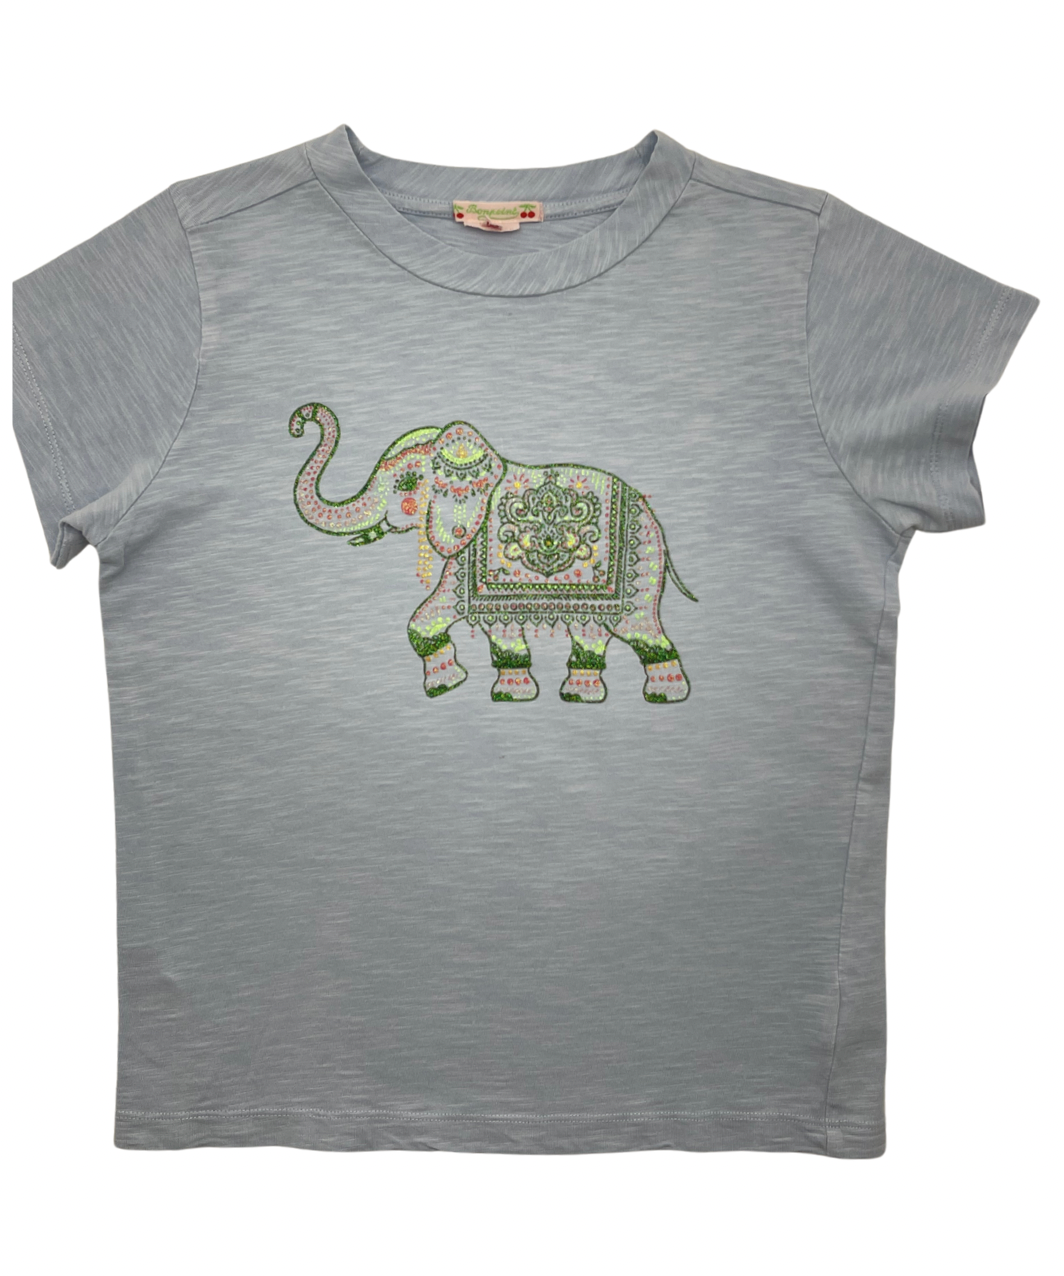 Bonpoint - Elephant T-shirt - 12 years